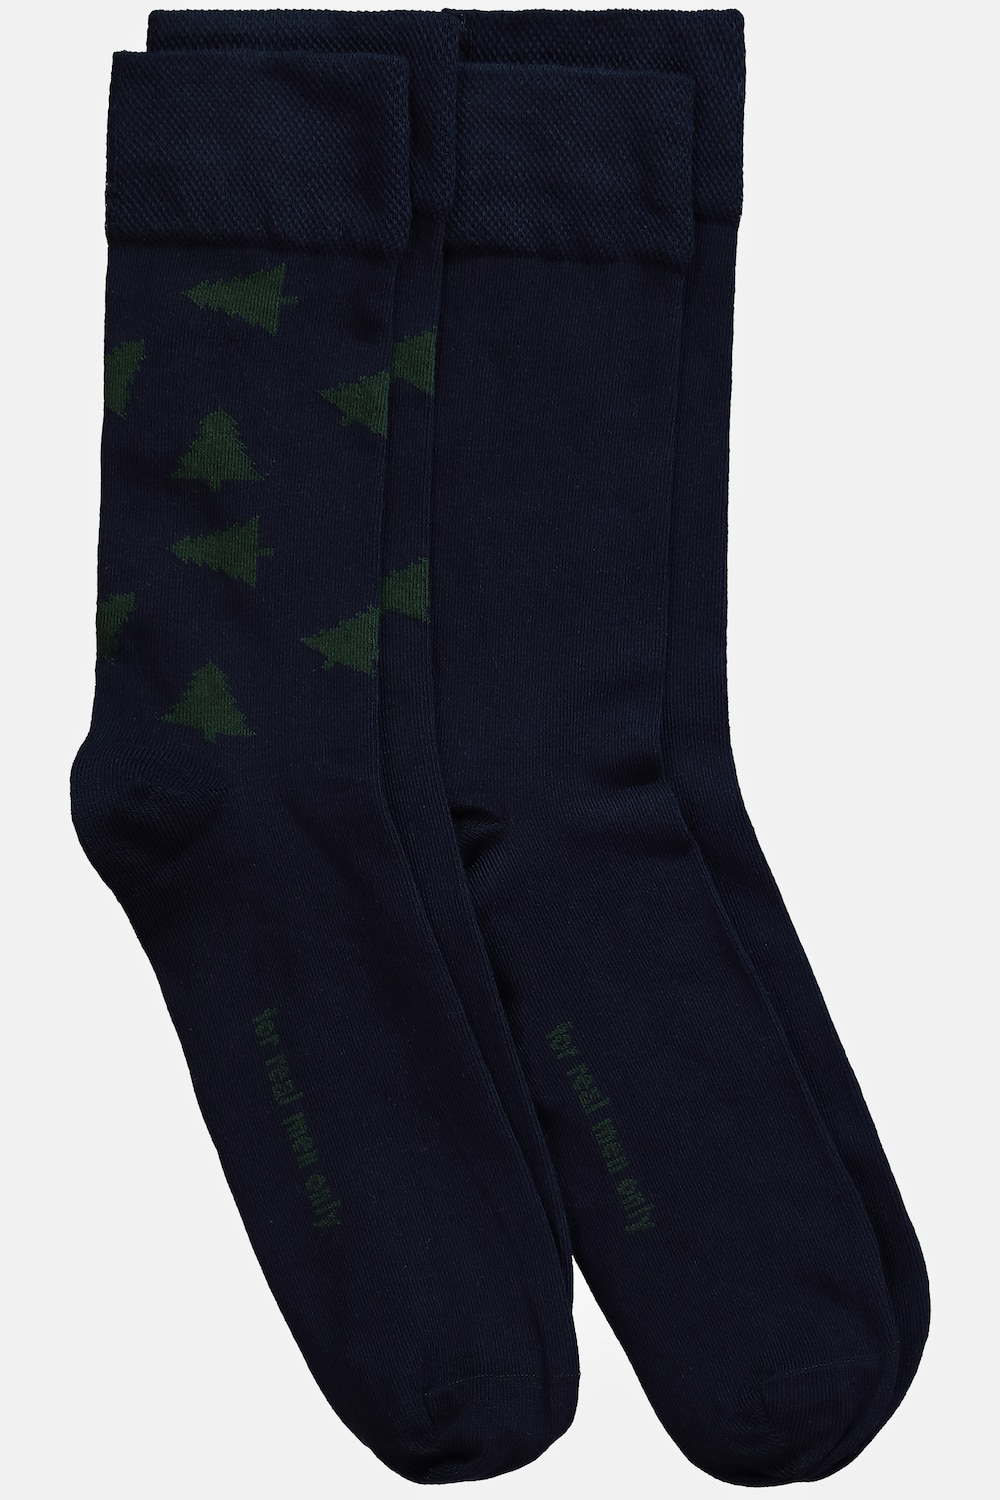 Große Größen X-Mas Socken, Herren, blau, Größe: 47-50, Baumwolle/Synthetische Fasern, JP1880 von JP1880